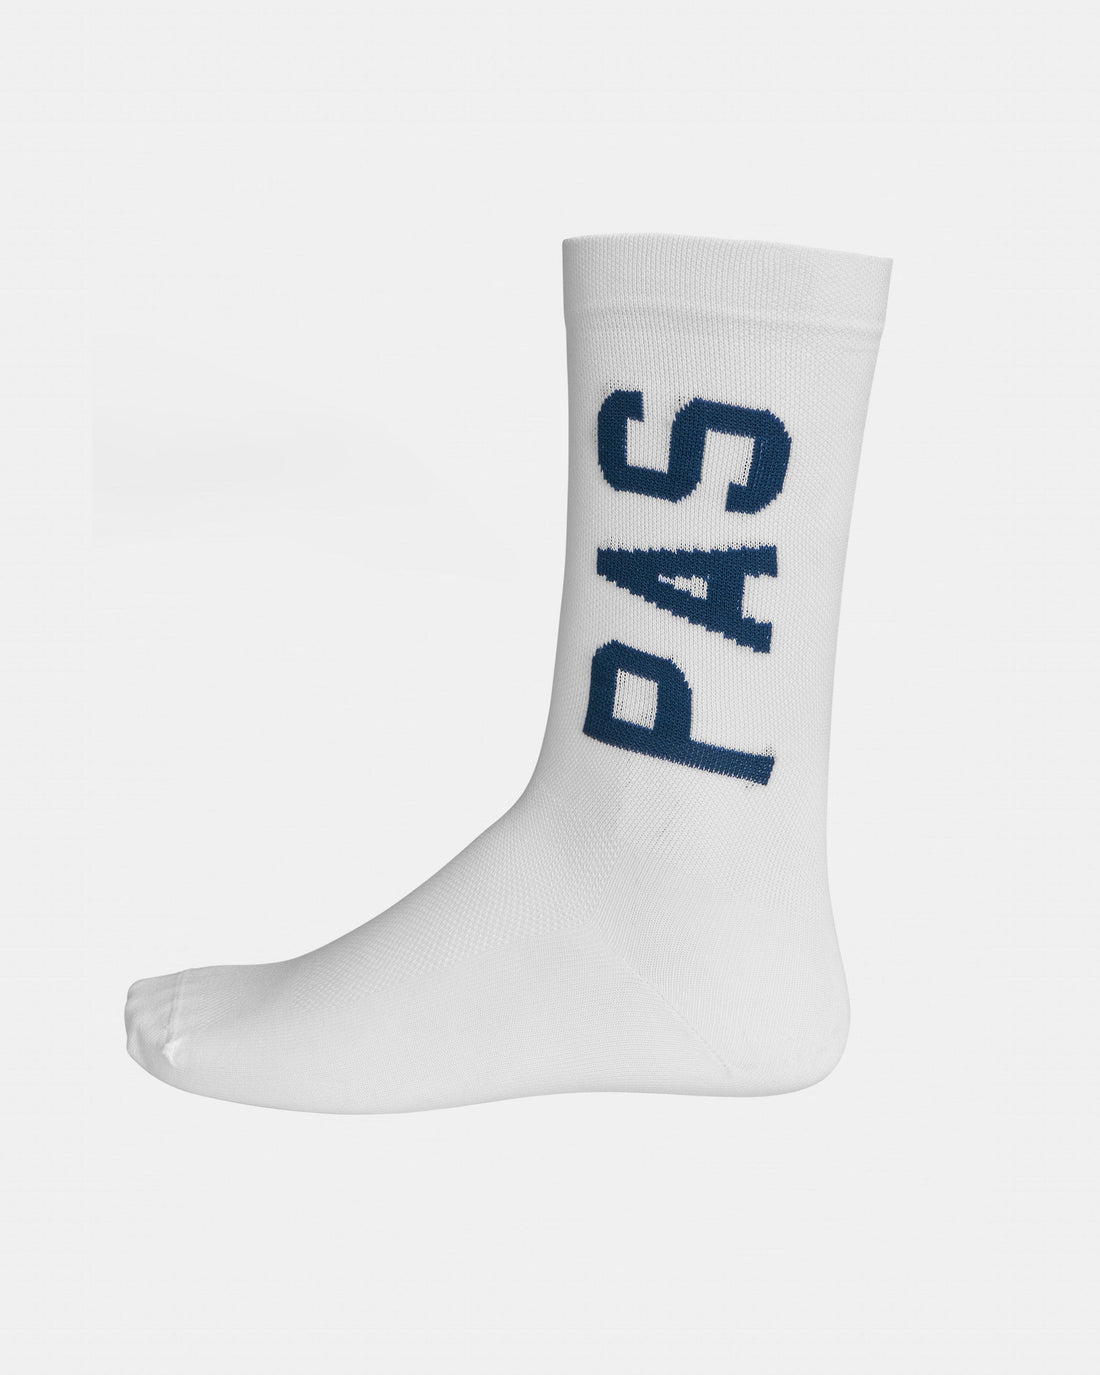 PAS Socks - White